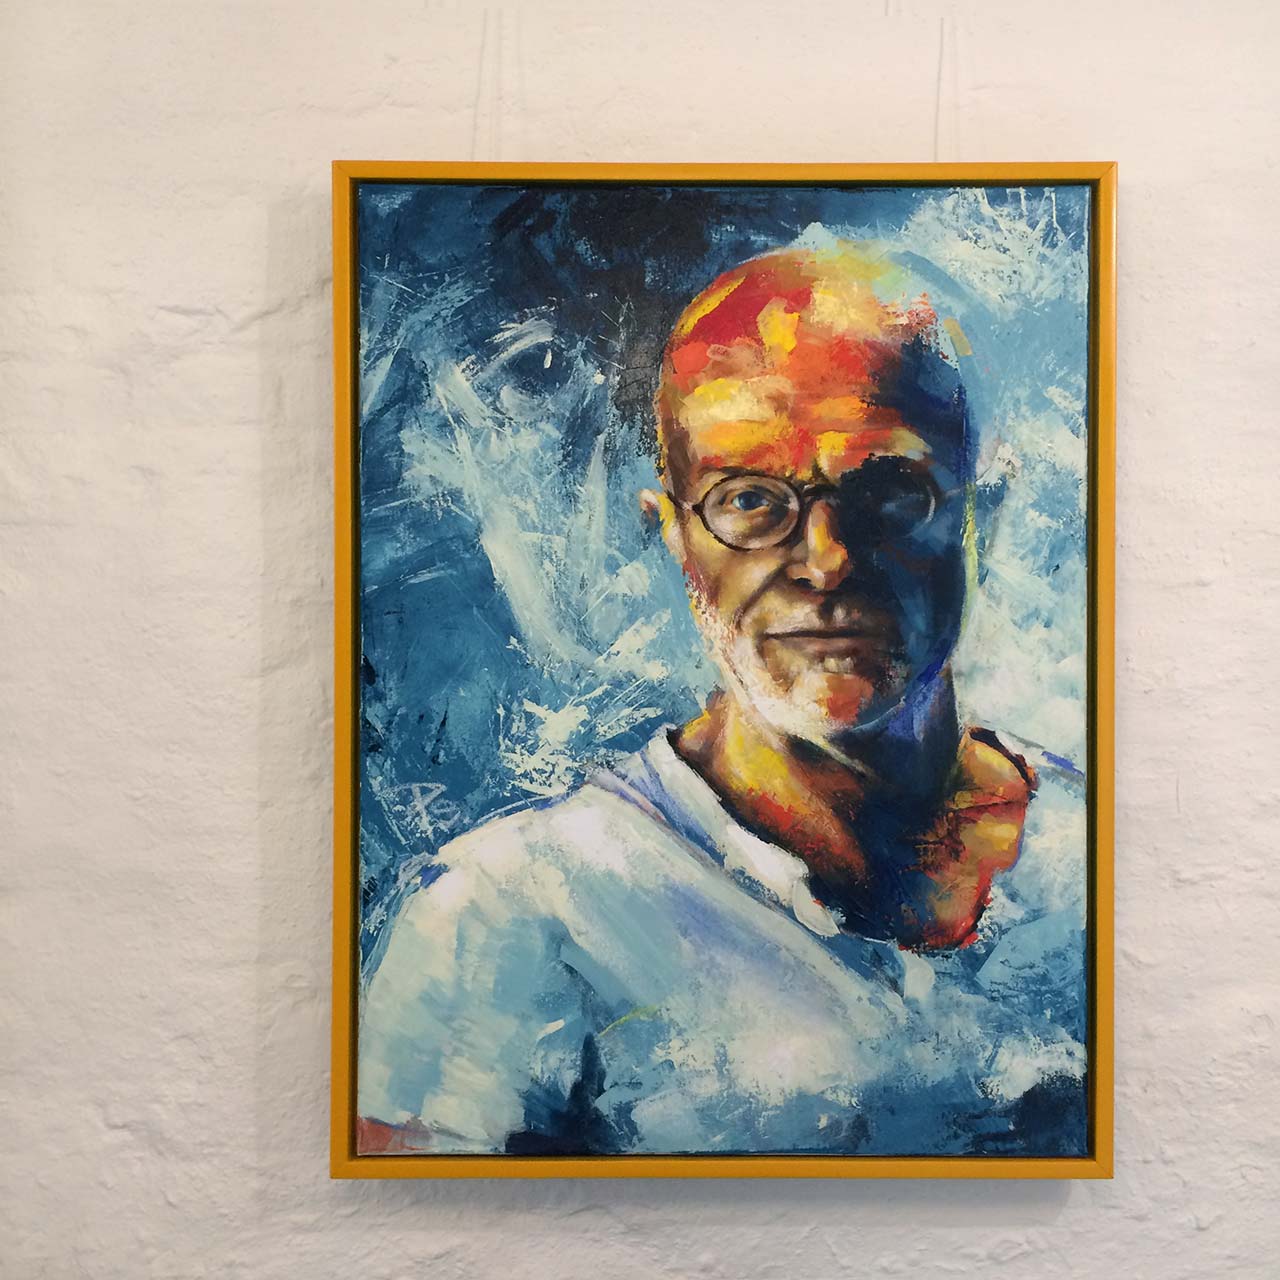 Portrætmaler Peter Simonsen, selvportræt malet i 2019. Ekspressionistisk portræt med et strejf af realisme.